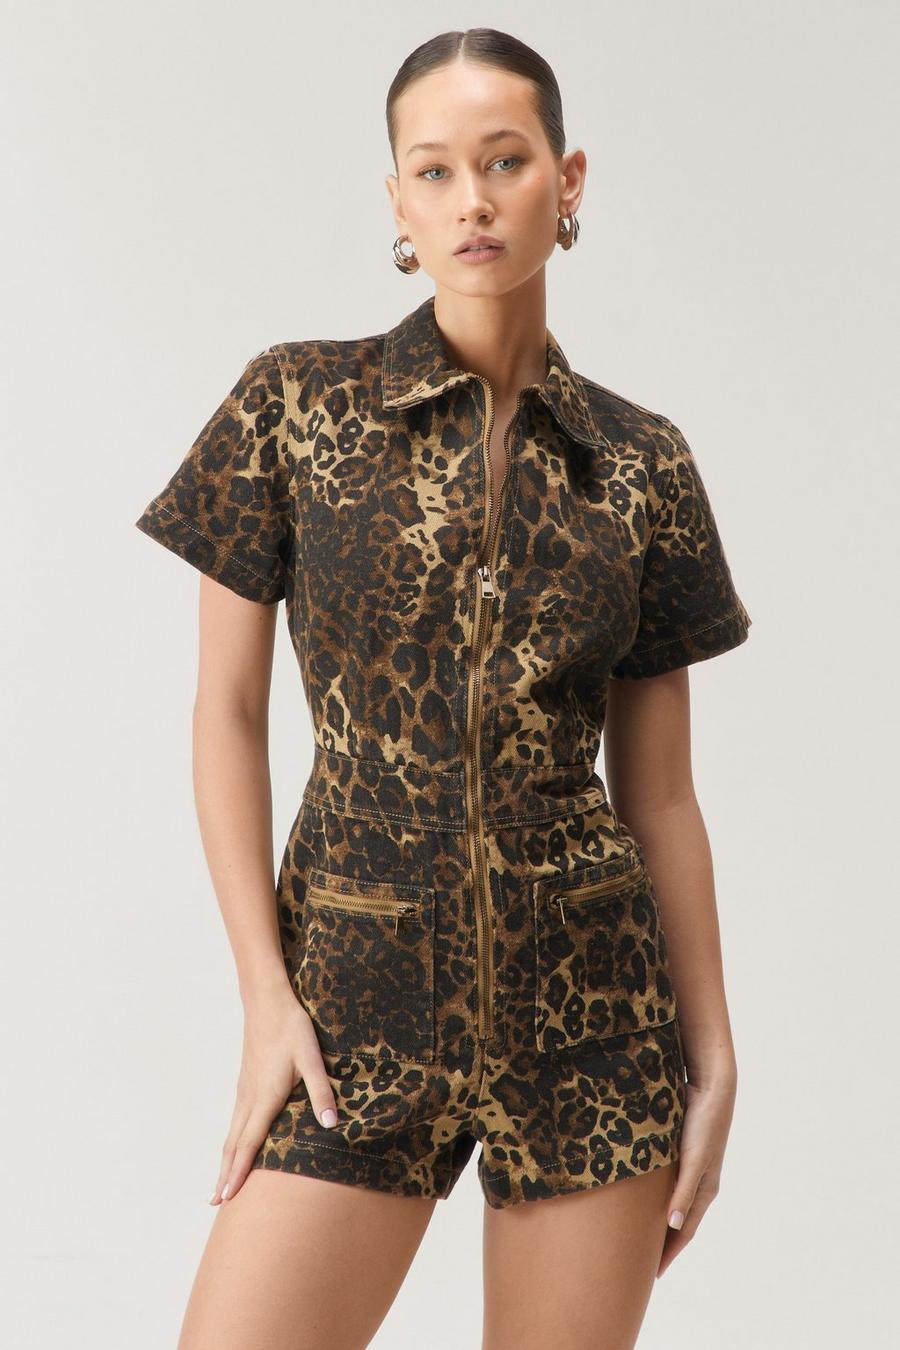 Leopard Print, Leopard Print Dresses, Tops & Skirts